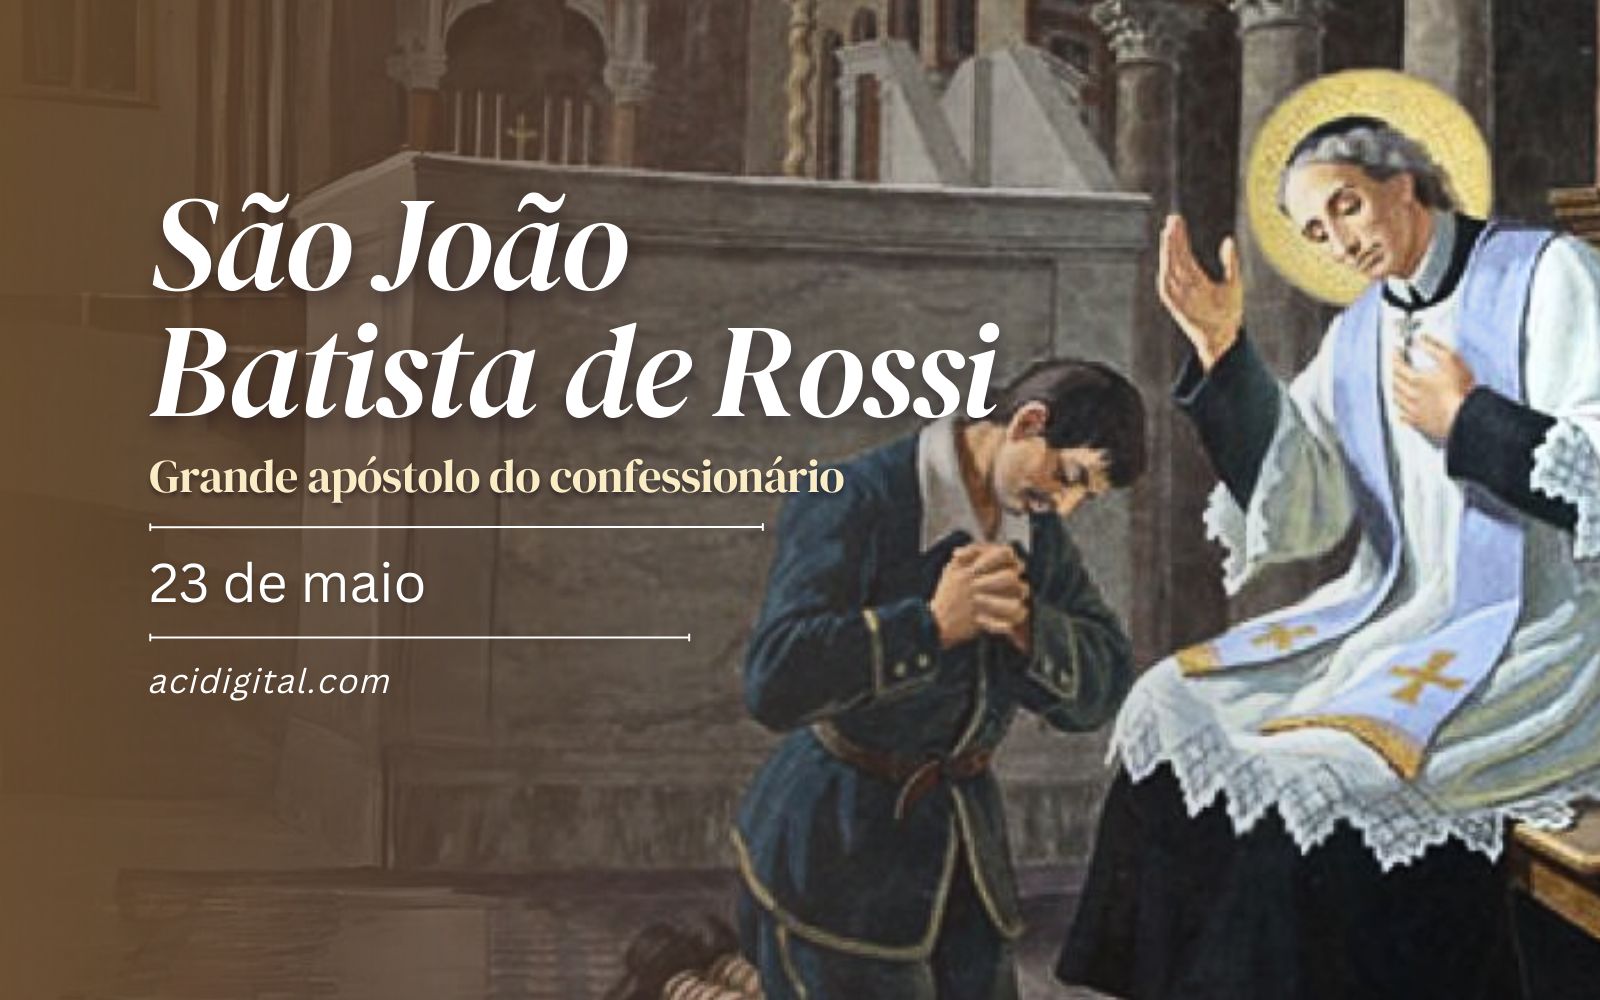 São João Batista de Rossi, grande apóstolo do confessionário